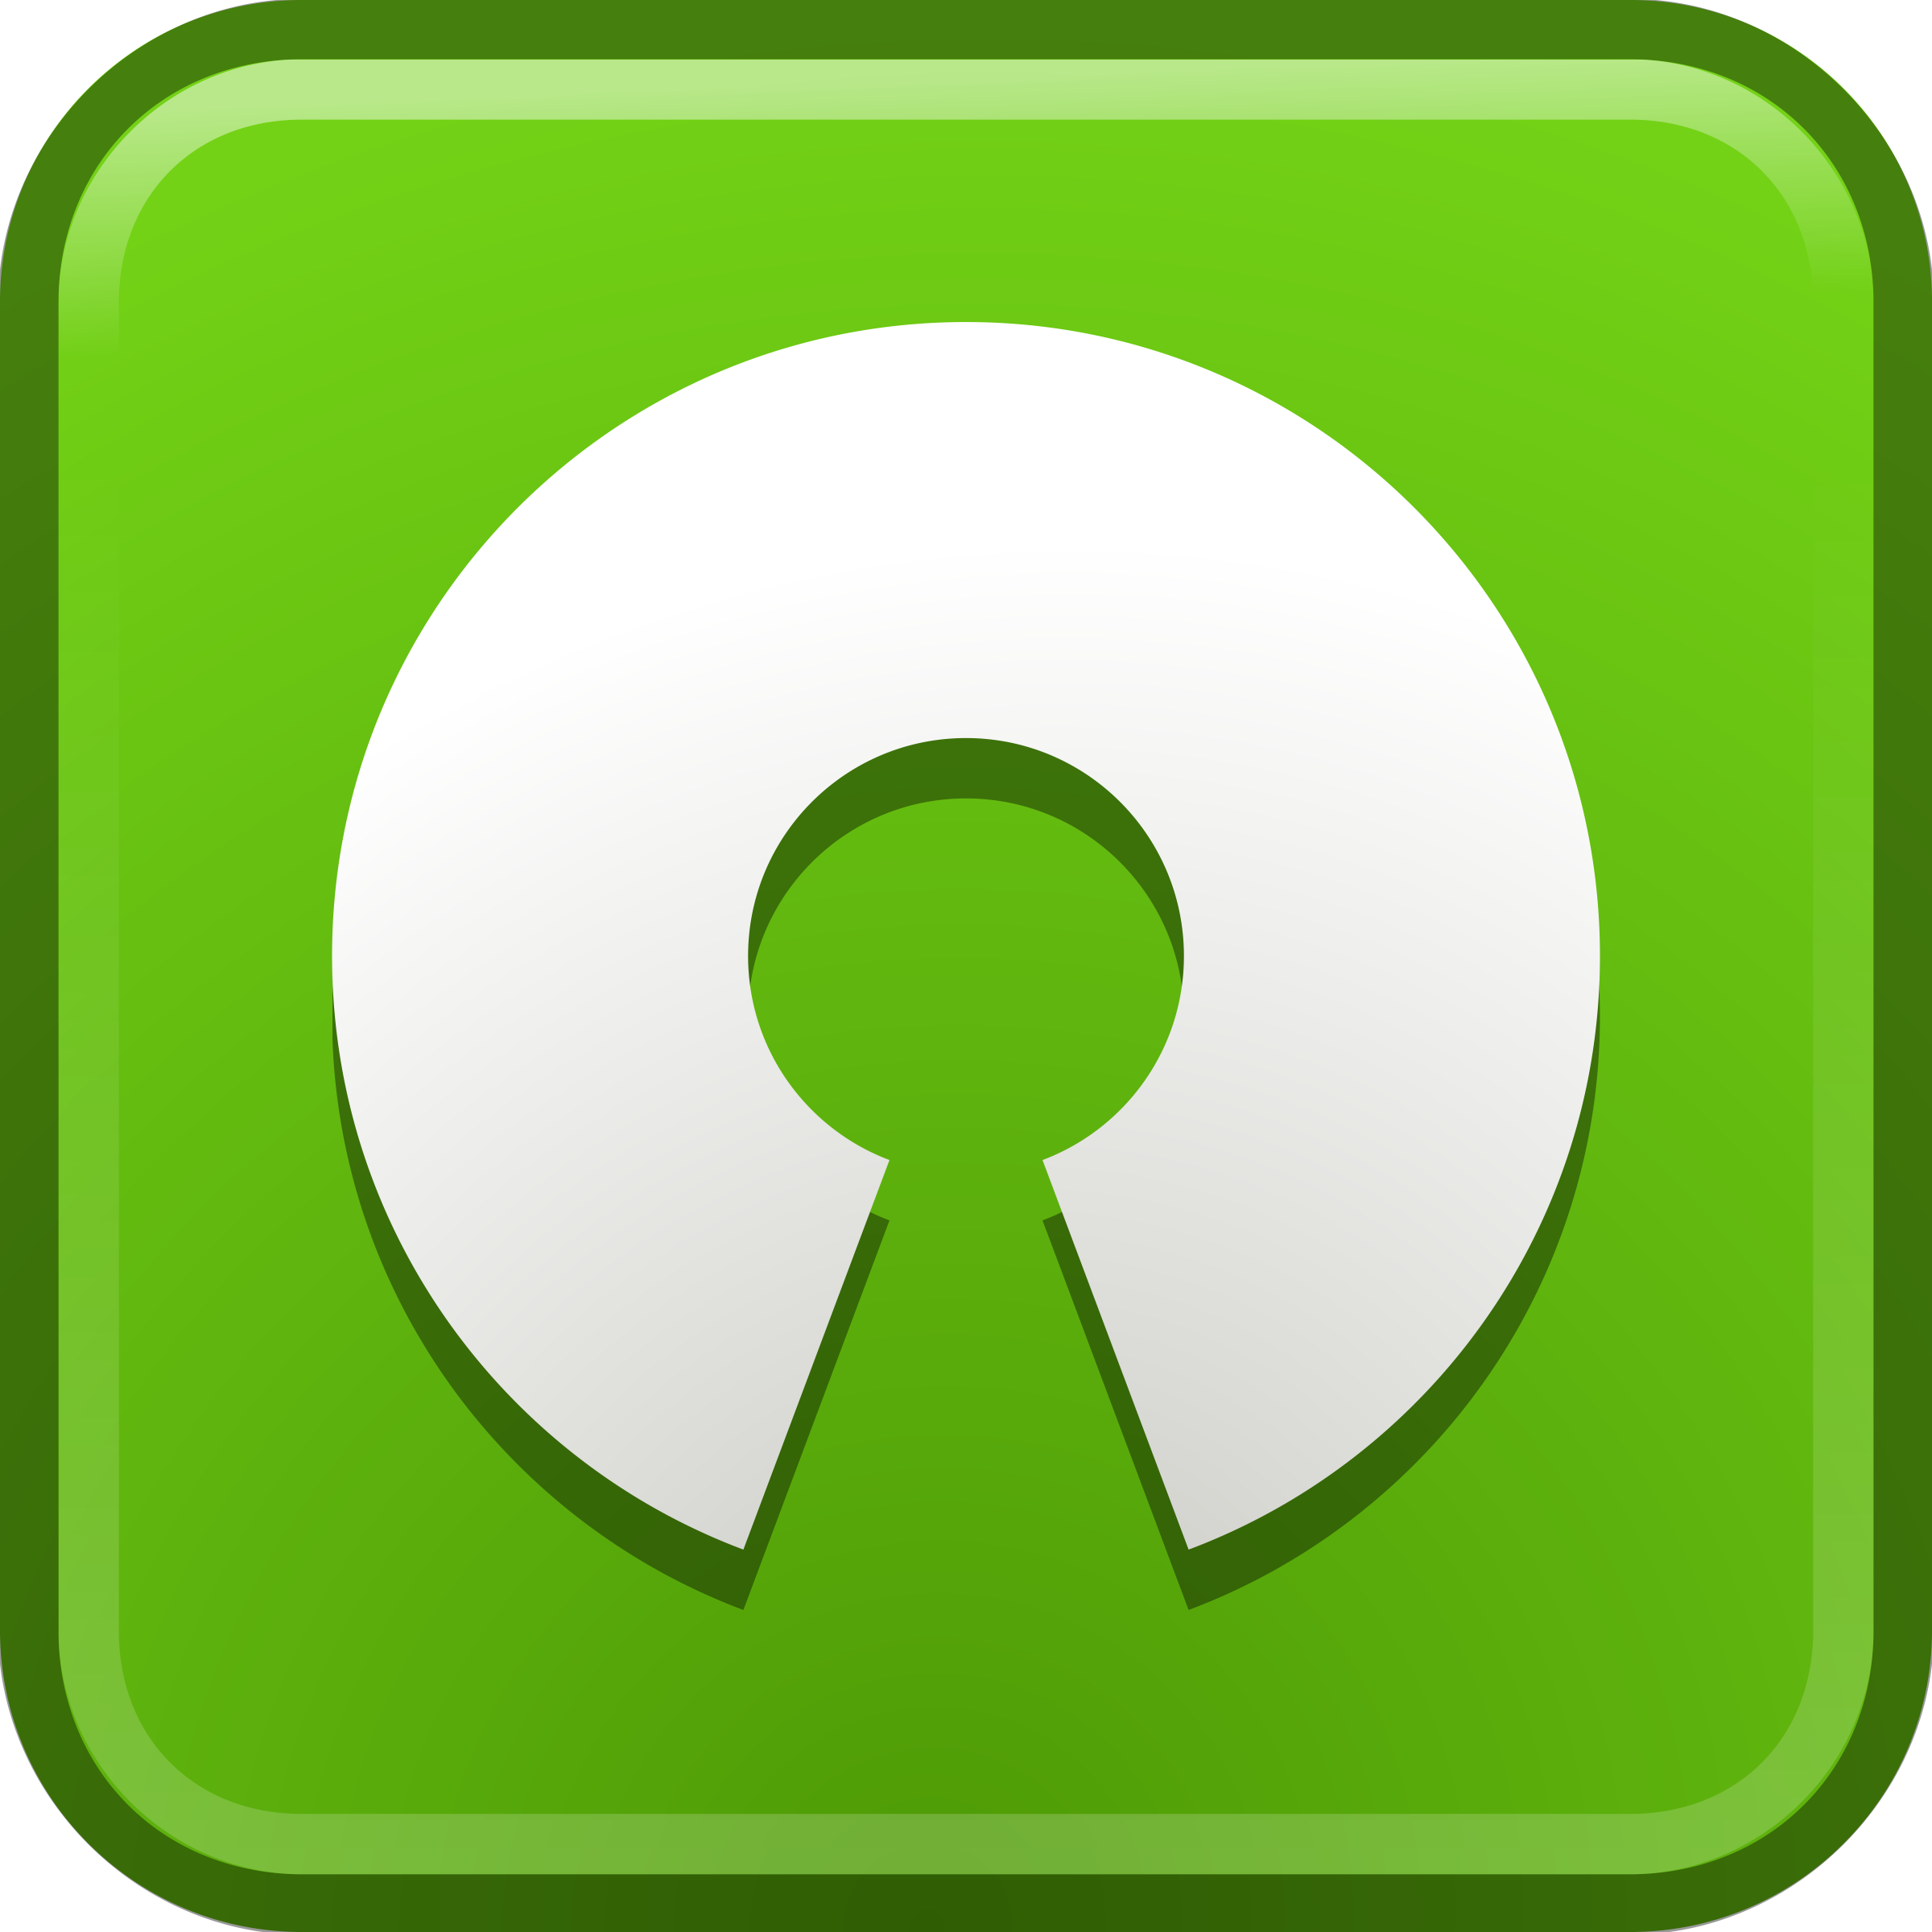 Clipart - emblem open source